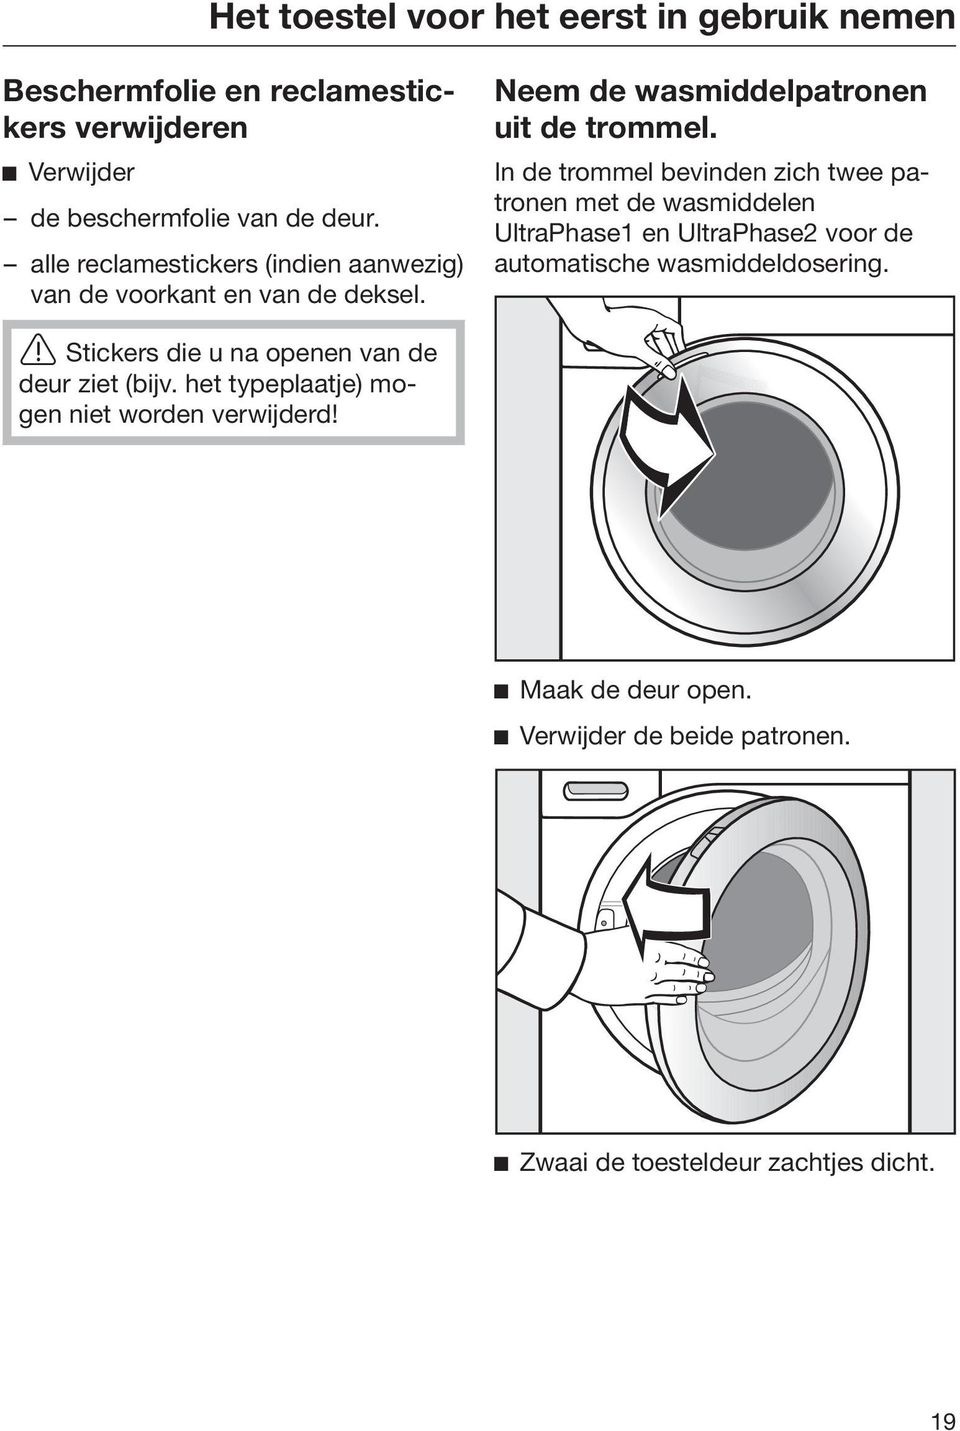 In de trommel bevinden zich twee patronen met de wasmiddelen UltraPhase1 en UltraPhase2 voor de automatische wasmiddeldosering.